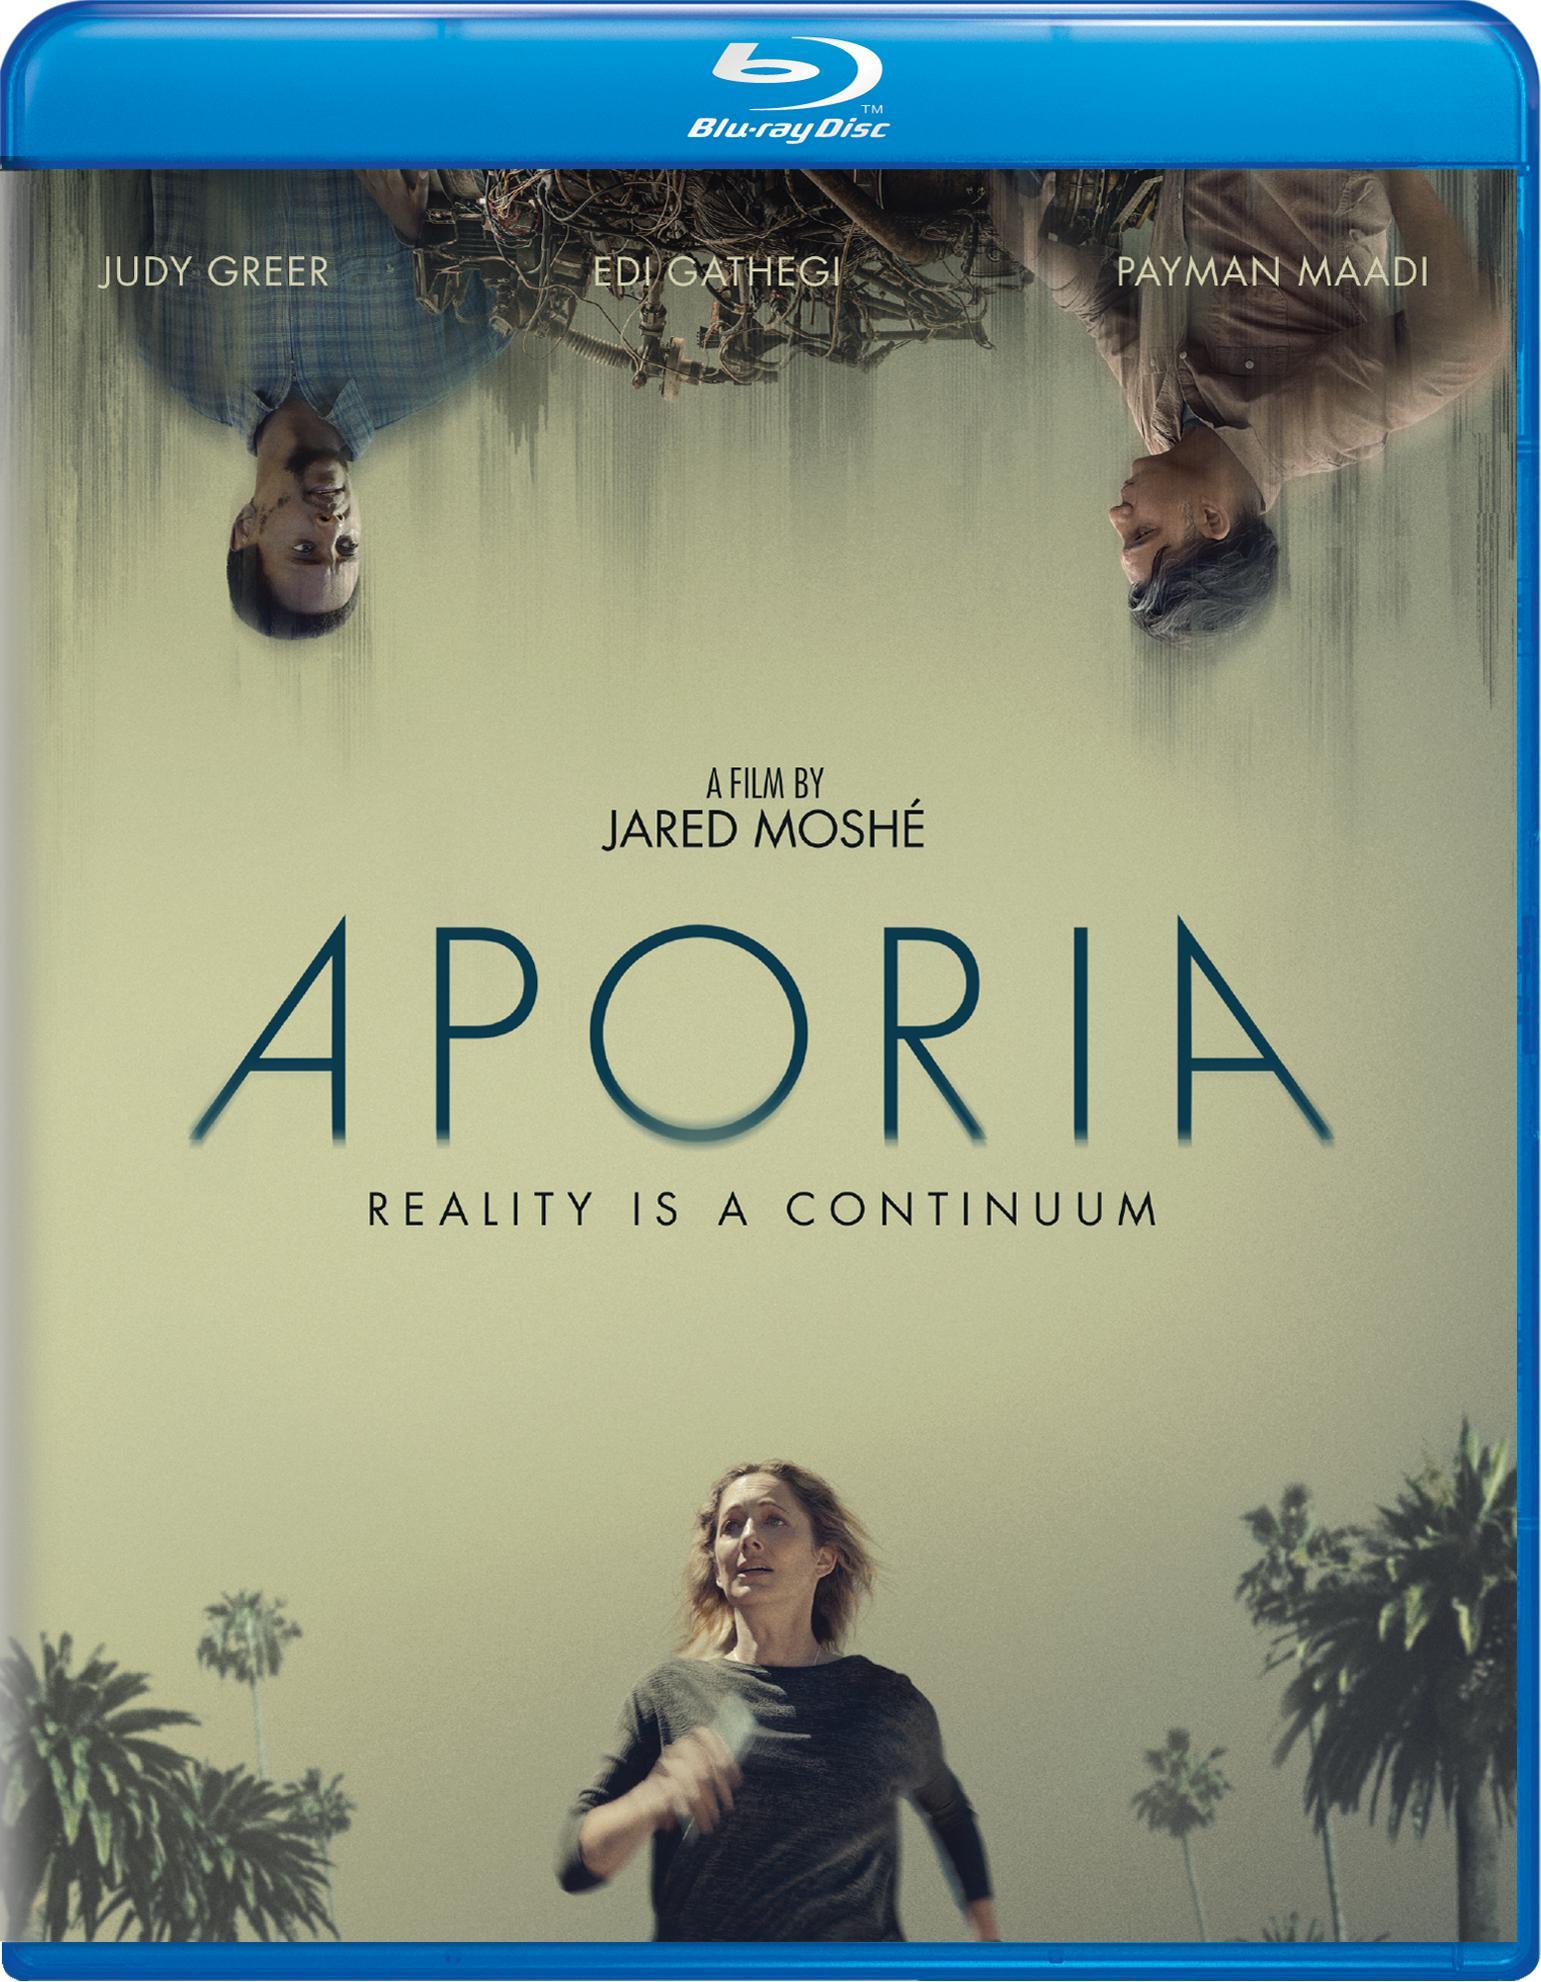 Aporia - Blu-ray   - Sci Fi Movies On Blu-ray - Movies On GRUV